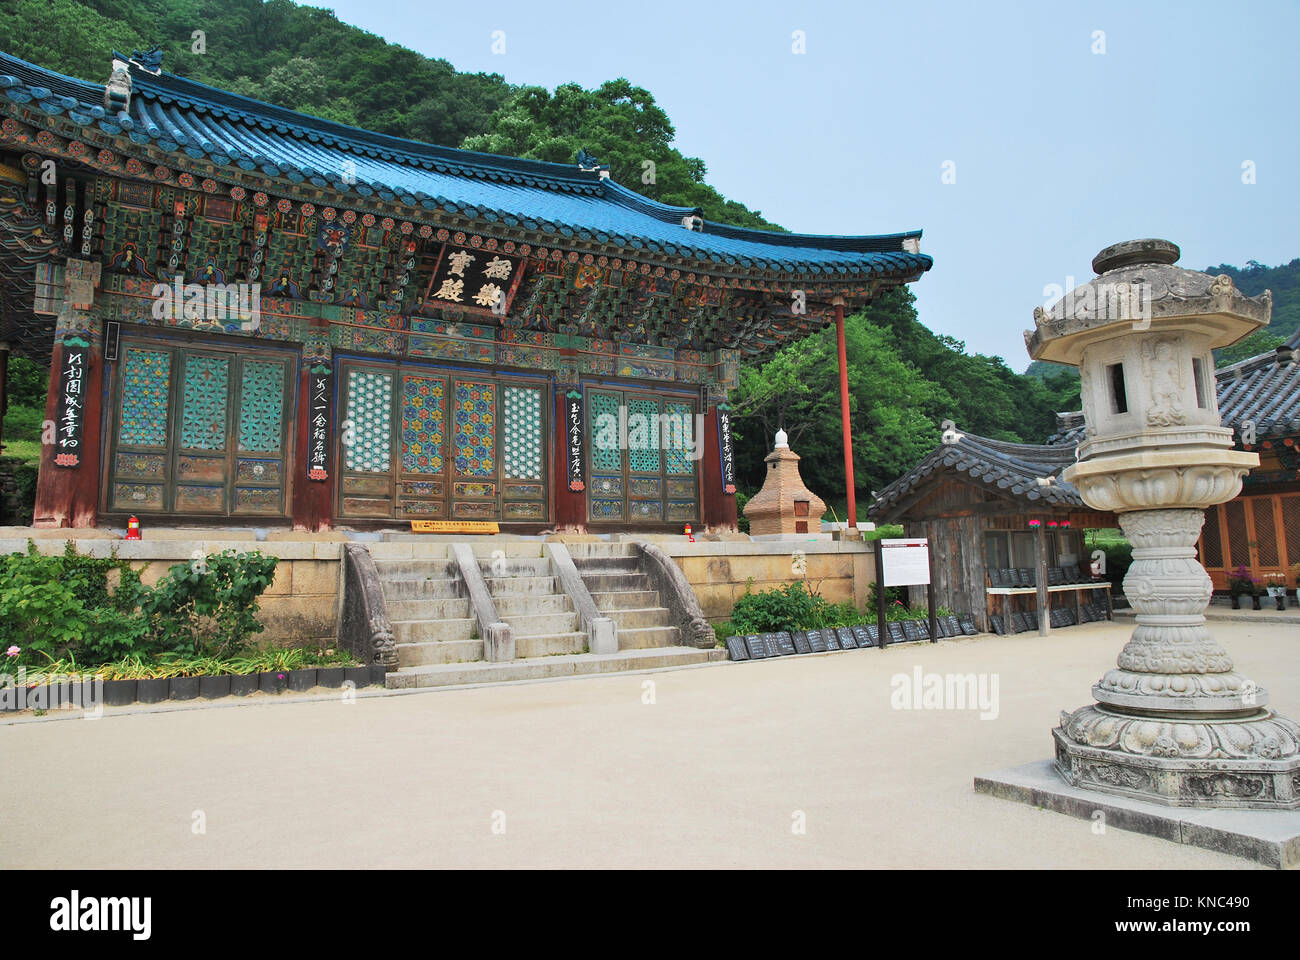 De style coréen architecture détaillée de l'immeuble principal de la lanterne de pierre et à l'avant-plan. Symbole du bouddhisme, Religio, la foi, et de la paix. Banque D'Images